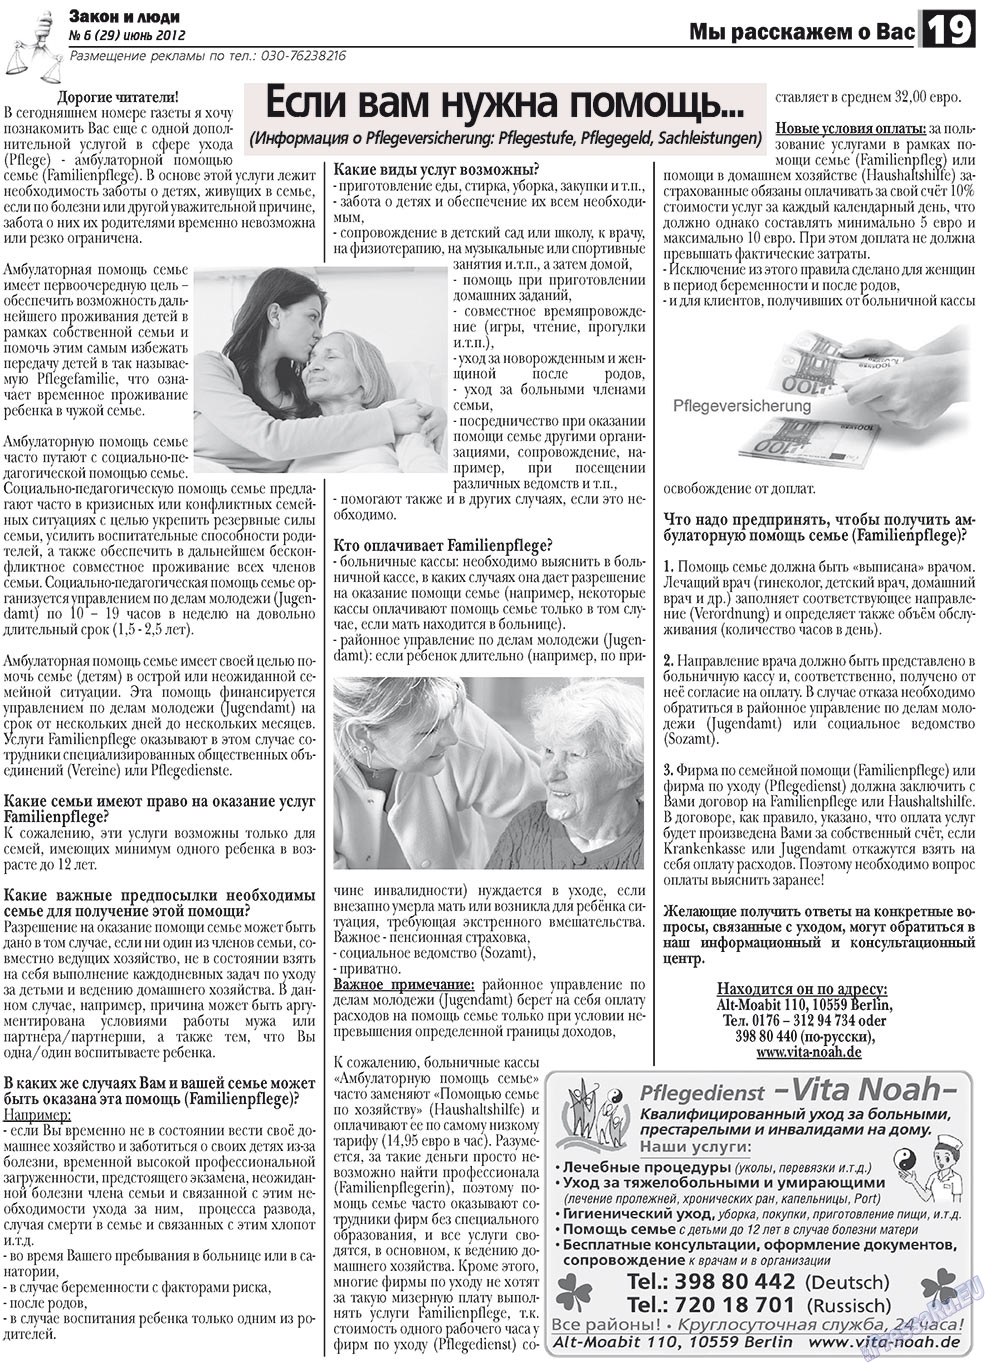 Закон и люди, газета. 2012 №6 стр.19